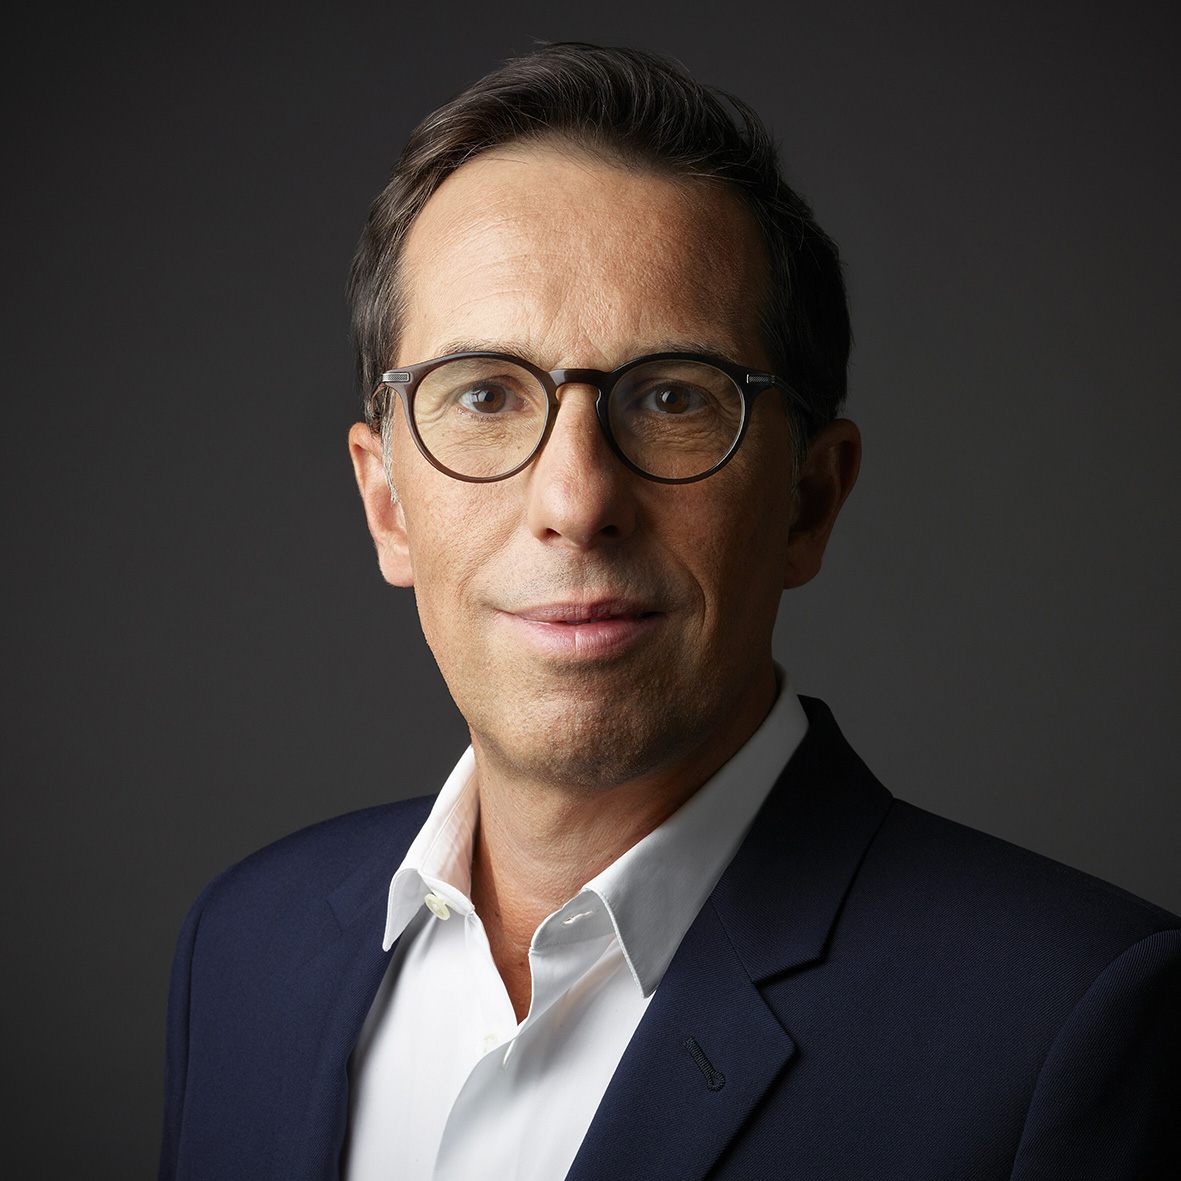 Nicolas Hieronimus, CEO of L'Oréal Groupe